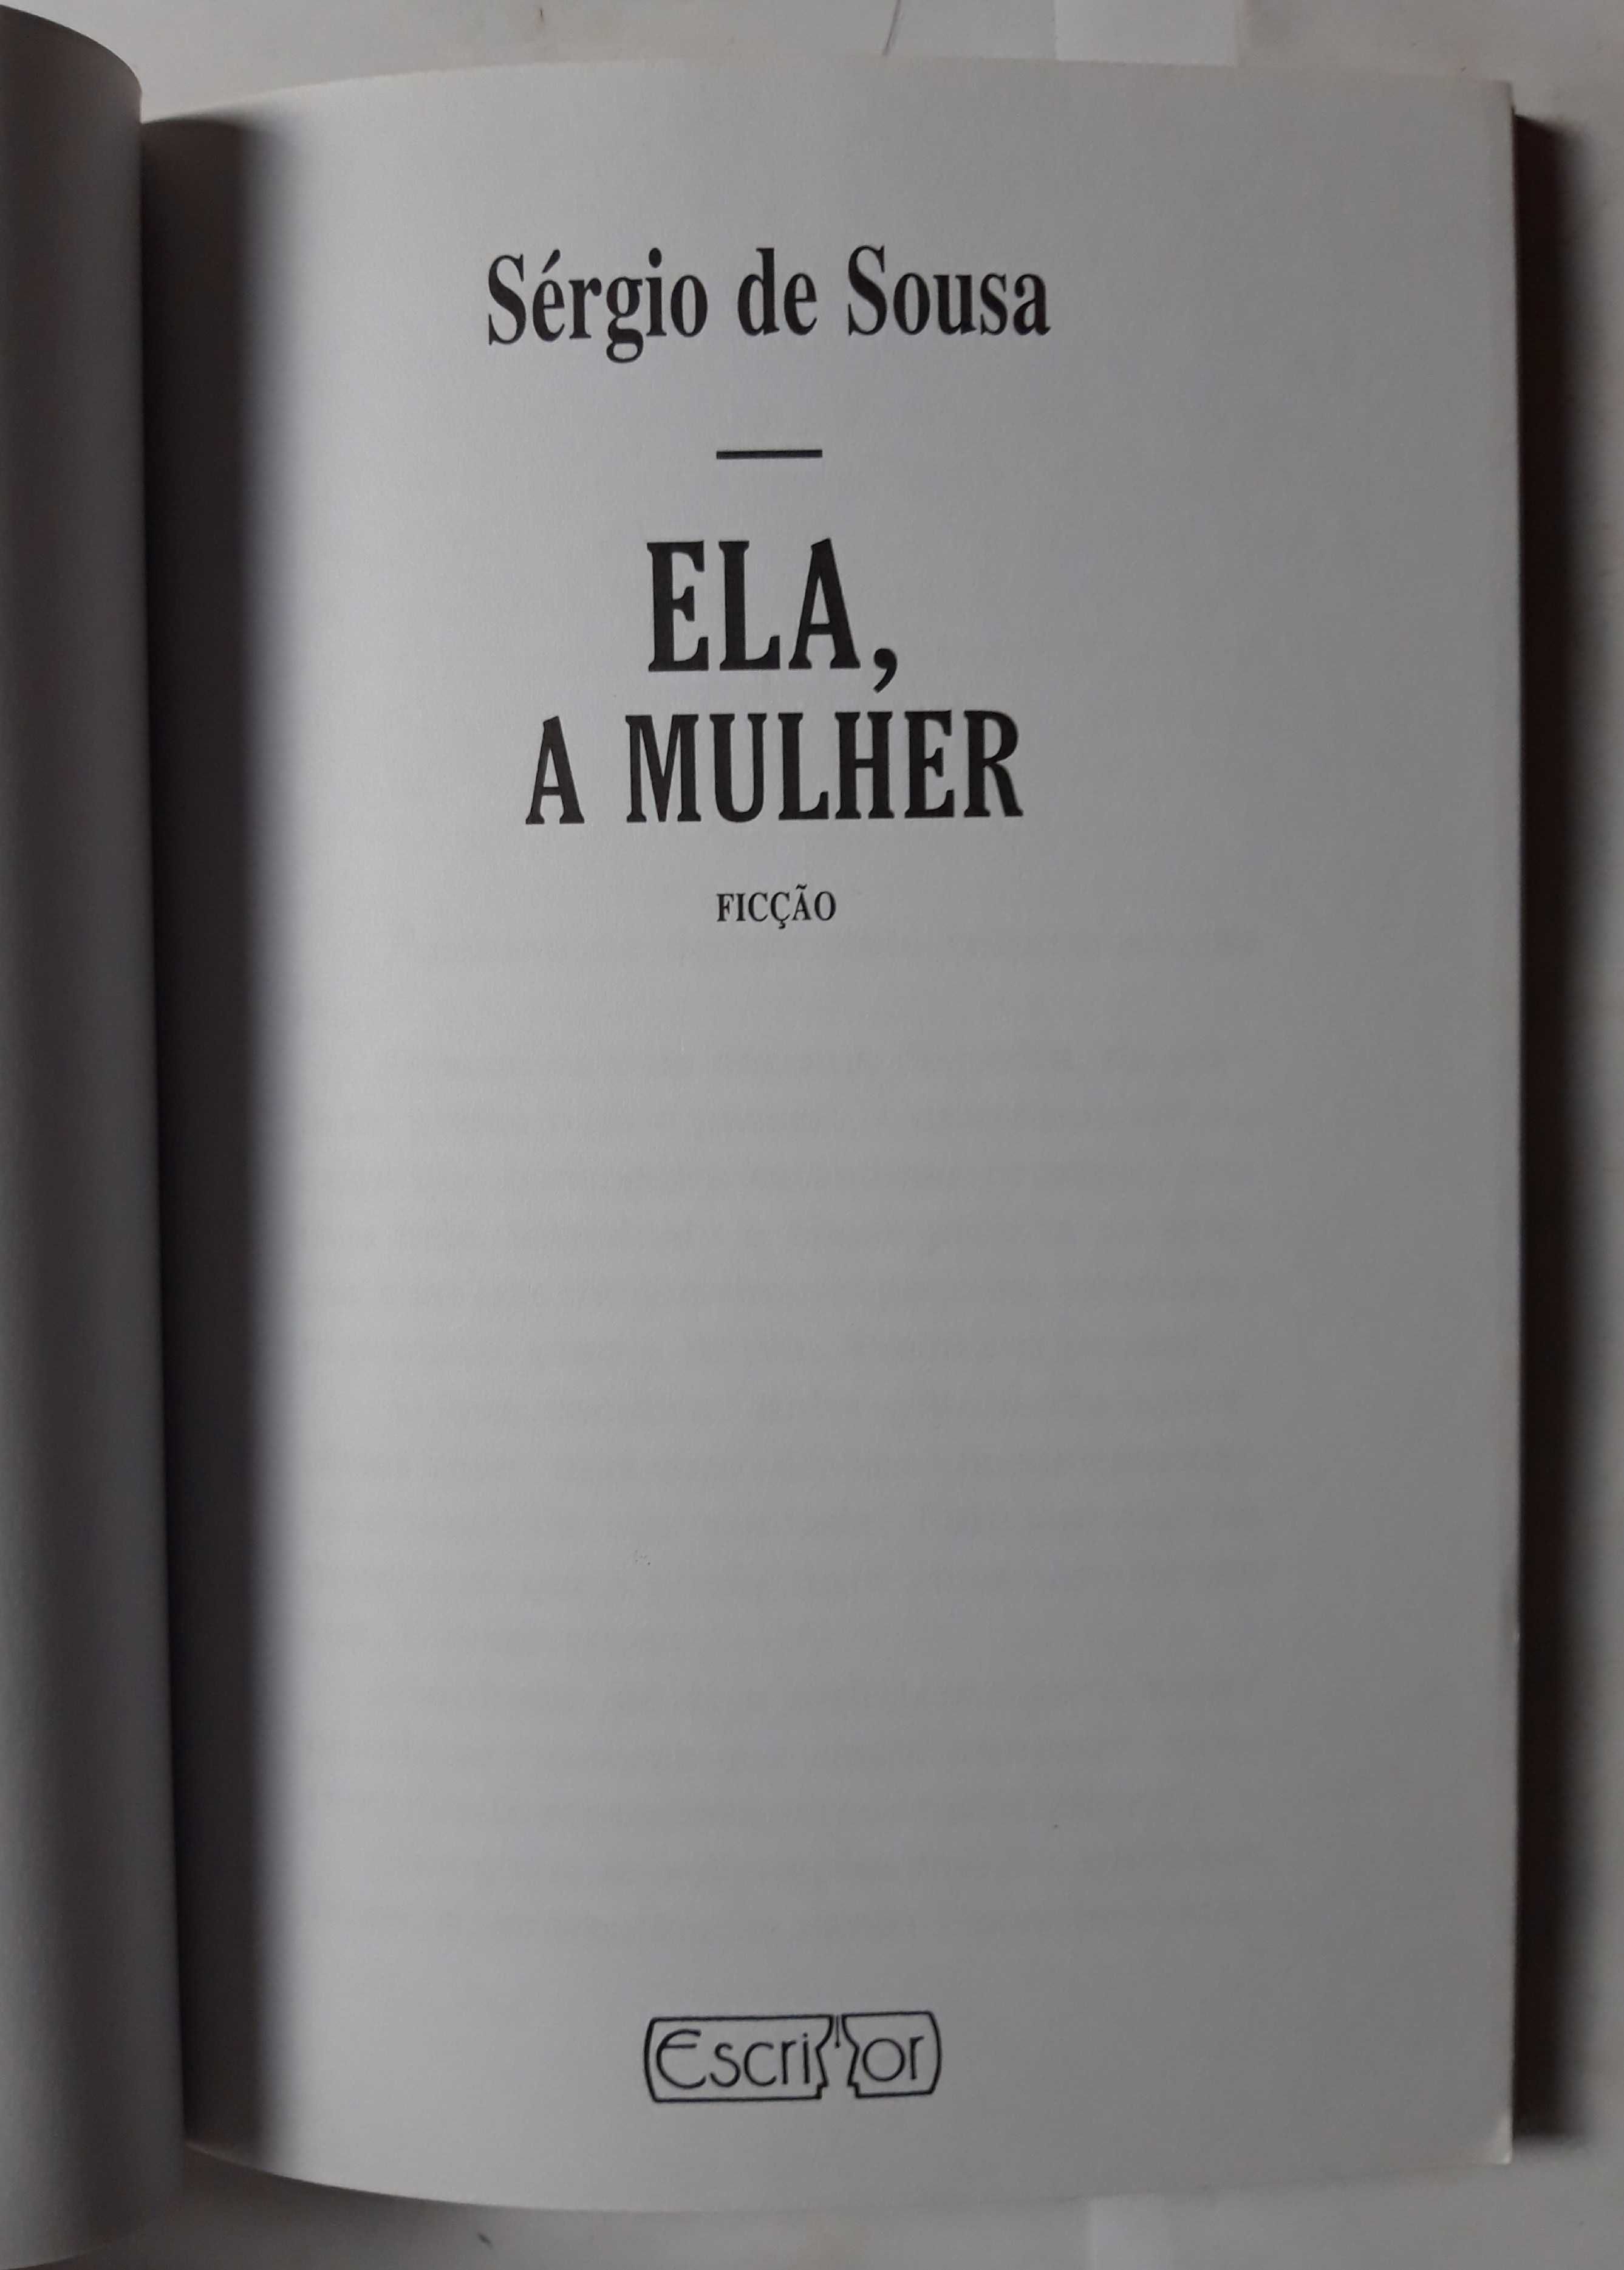 Livro Ref Par1- Sérgio de Sousa - Ela, A Mulher